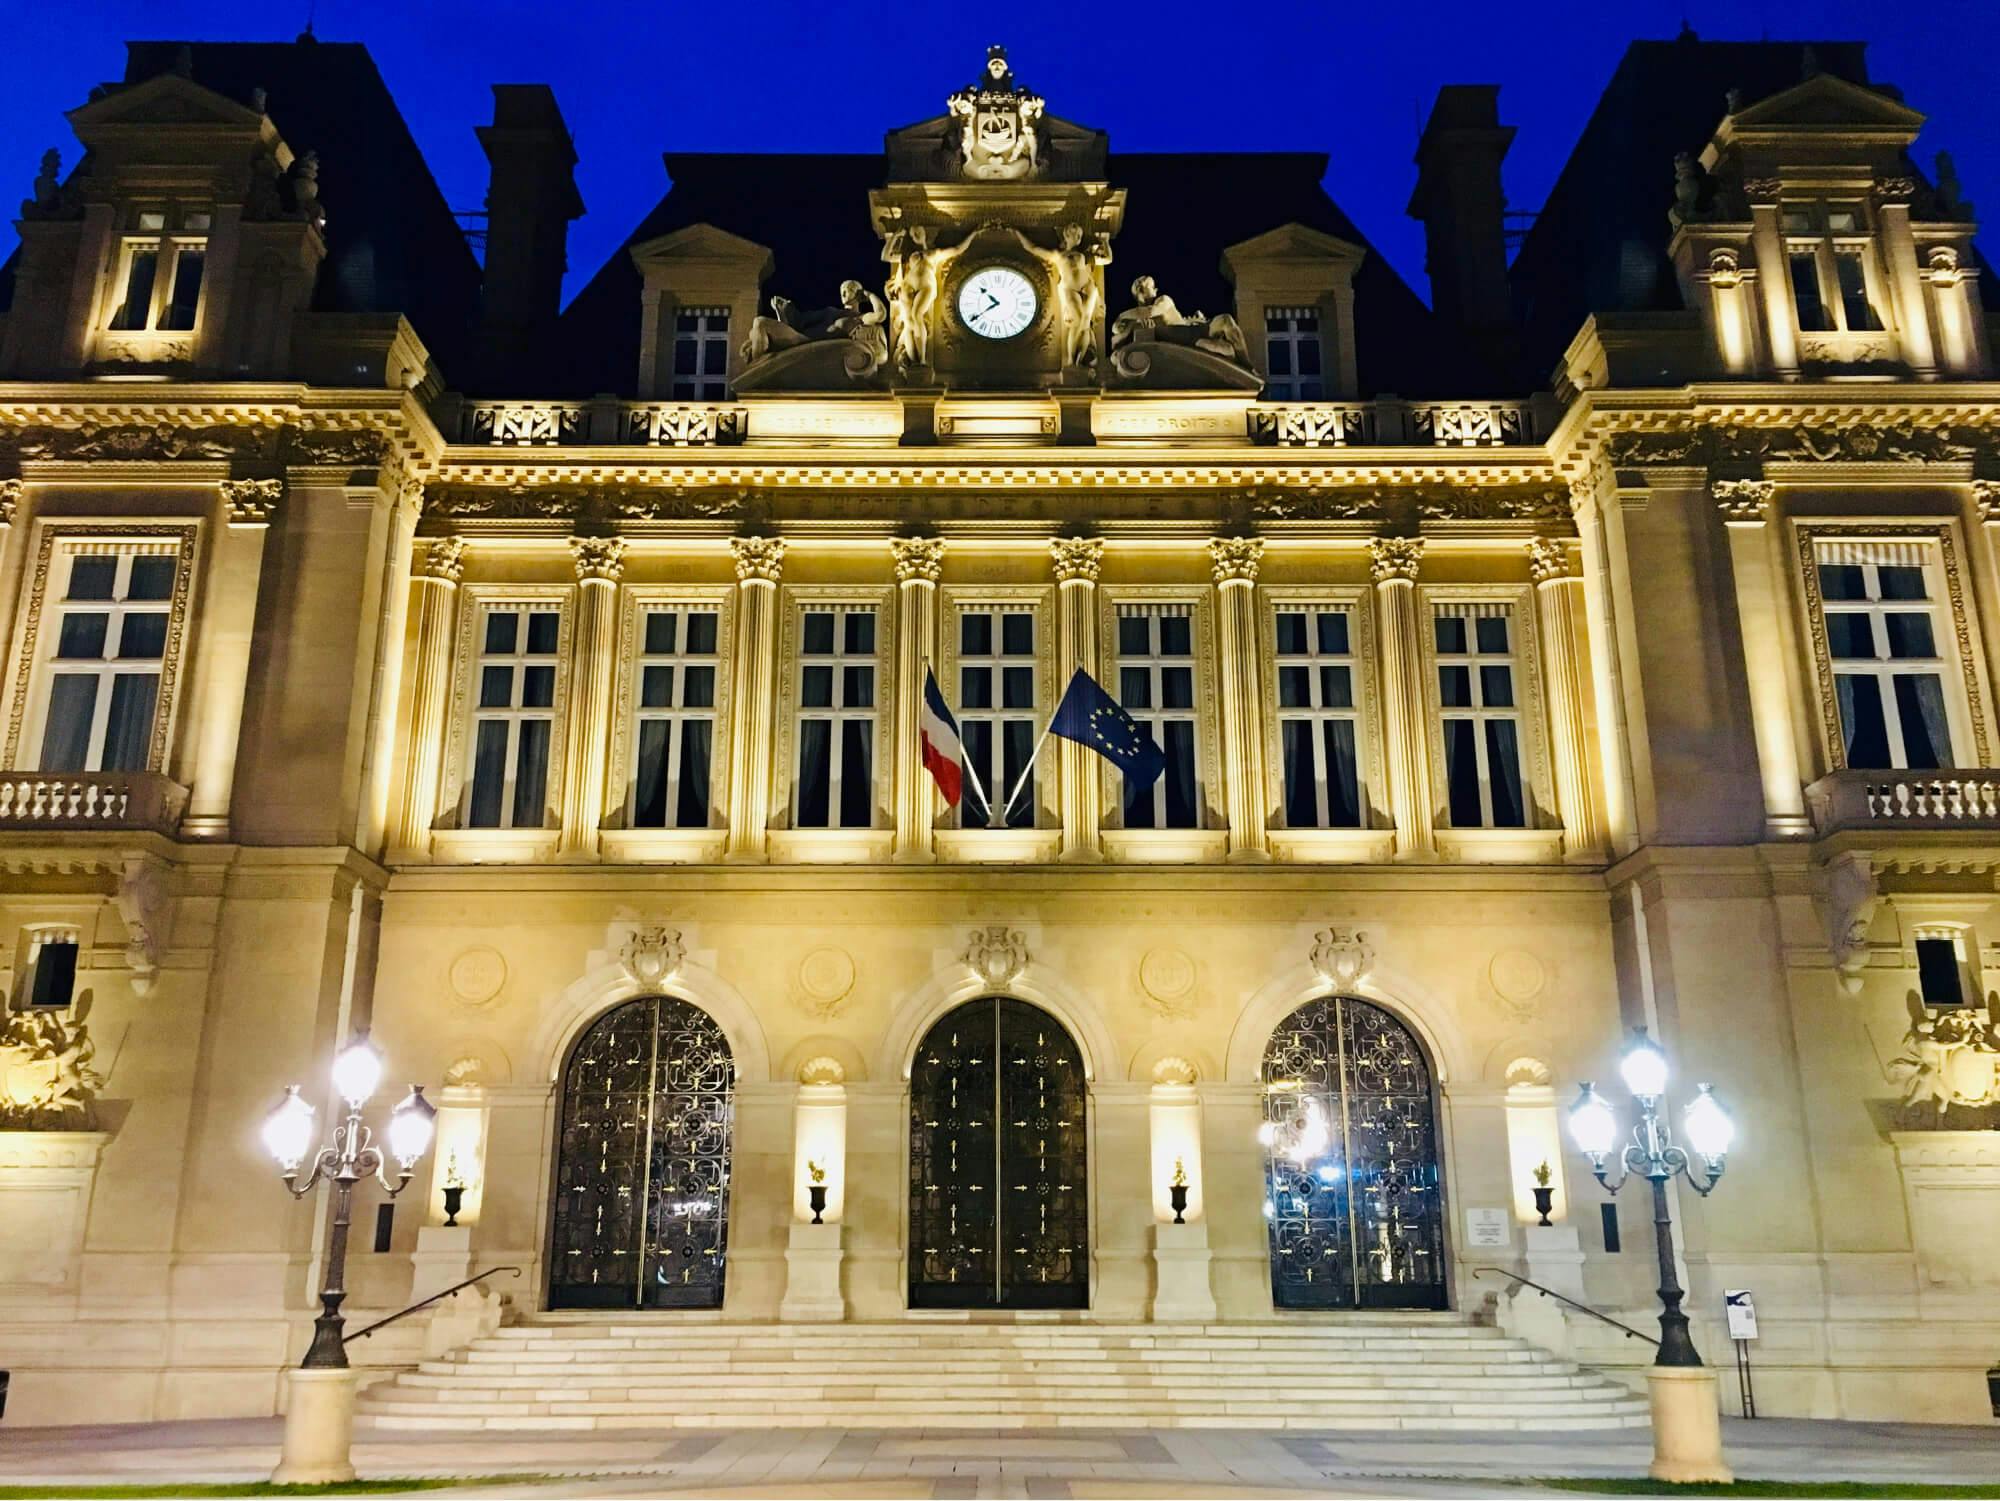 Hôtel de ville de Neuilly-sur-Seine
